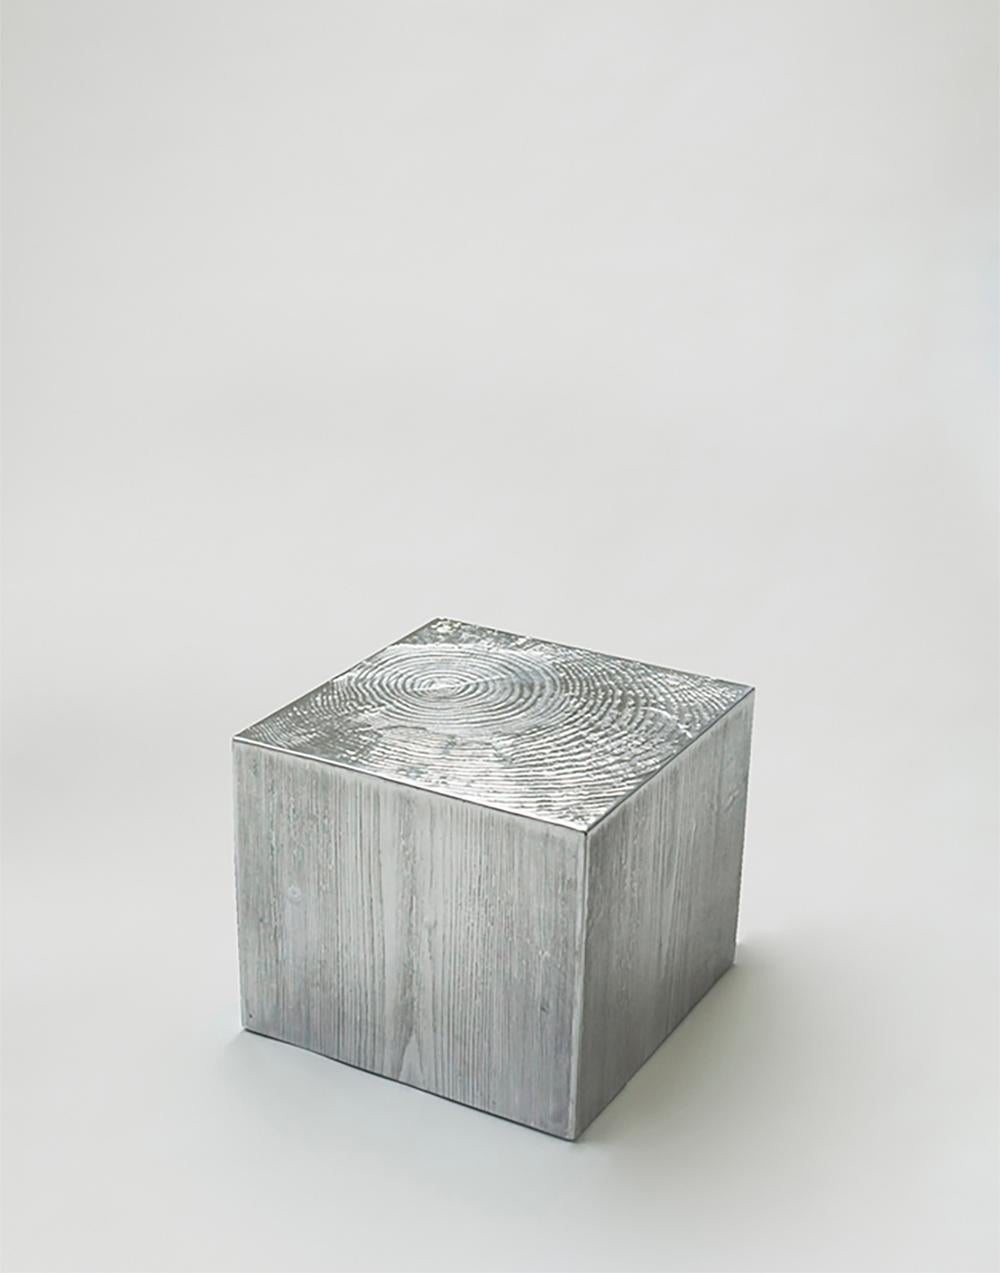 Couchtisch aus Aluminiumguss mit Holzstruktur, entworfen von Andrea Salvetti für Dilmos Milano. 
Der Tisch ist ein aus poliertem Aluminium gegossener Baumstamm. 

Vom Künstler signiert.
Auch für den Außenbereich geeignet.

Erhältlich in